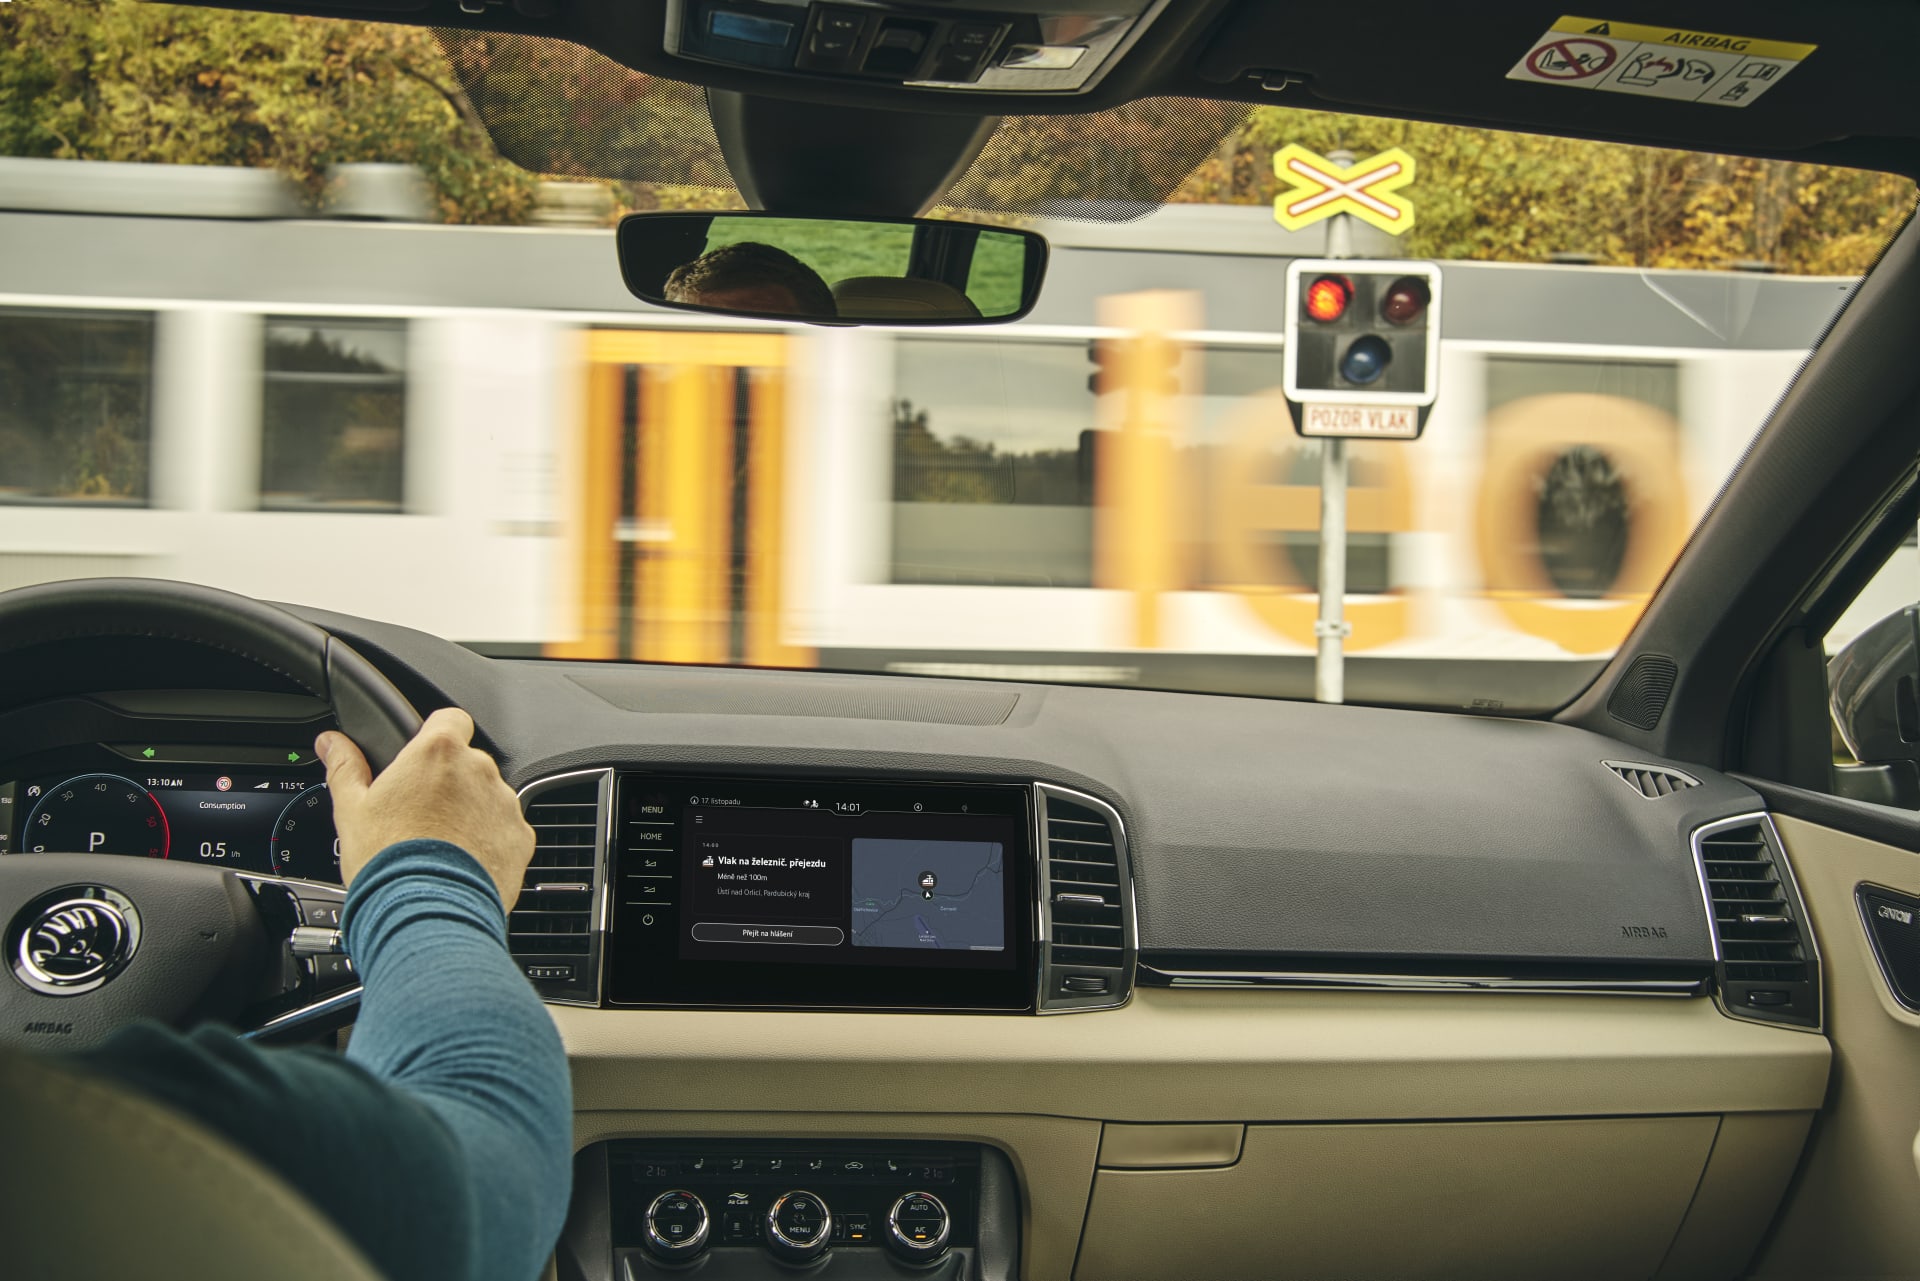 Aplikace běží za jízdy automaticky na pozadí. Varování se okamžitě zobrazují na středovém displeji.